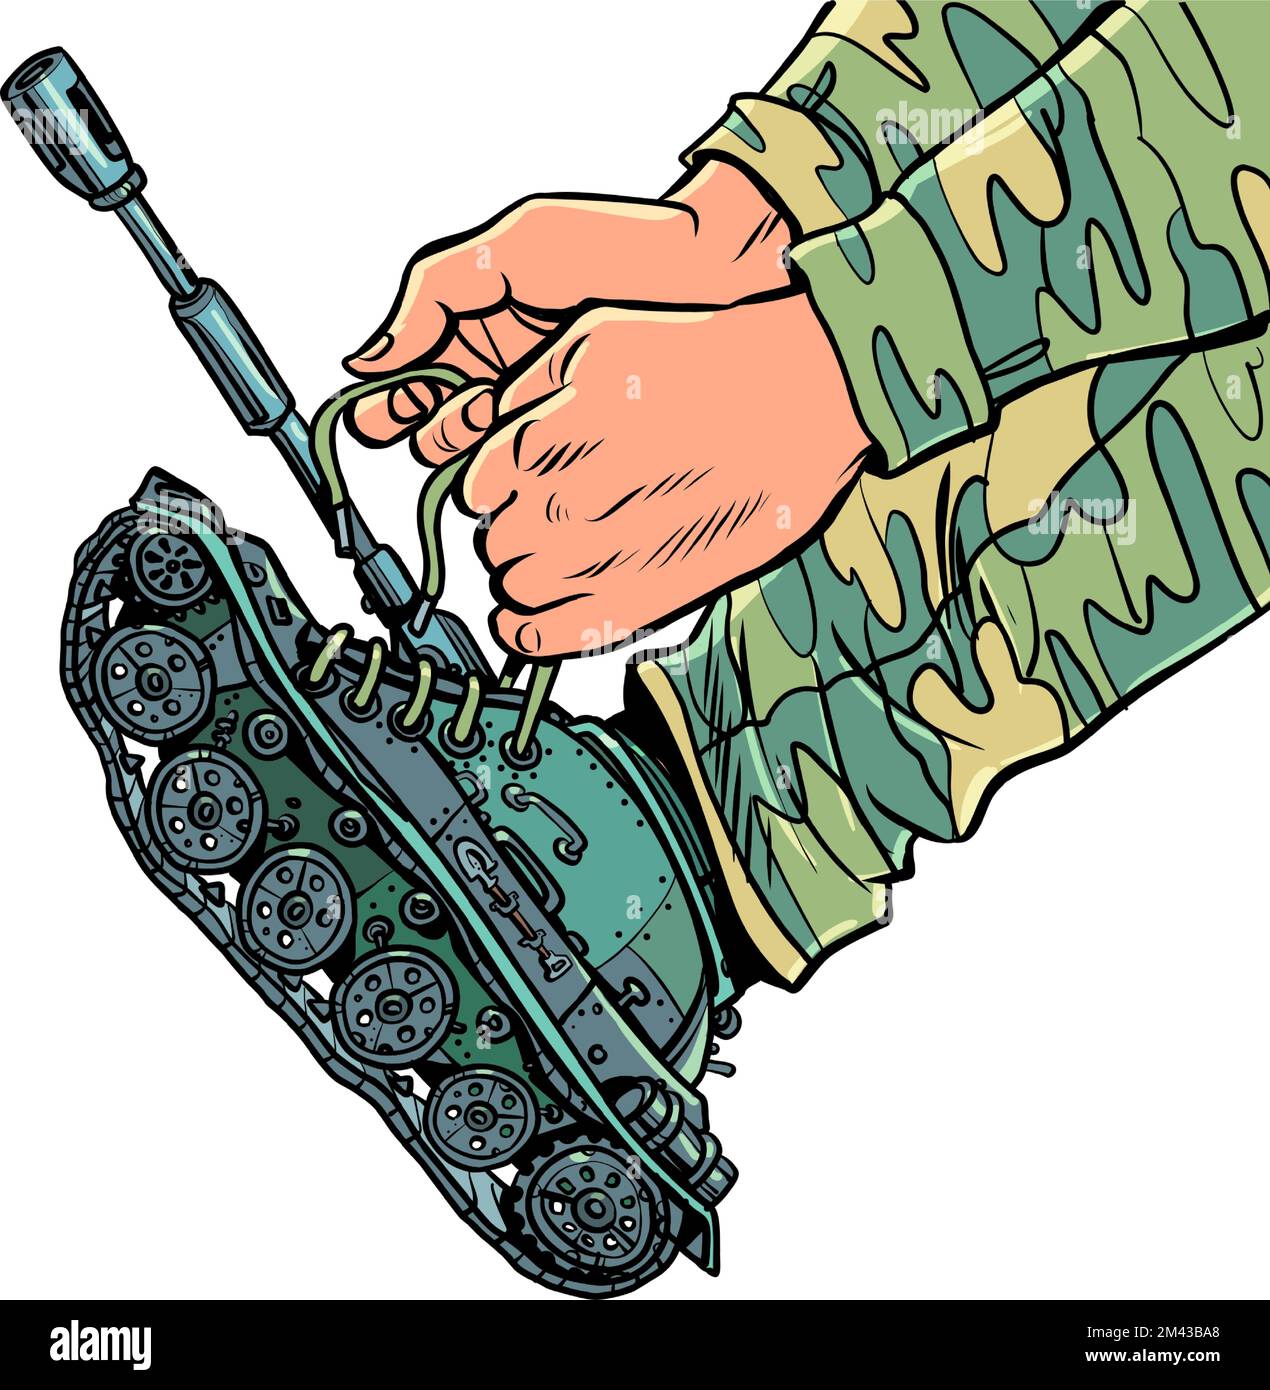 Un soldato in uniforme indossa carri armati anziché stivali. Concetto di mobilitazione di guerra dell'esercito Illustrazione Vettoriale